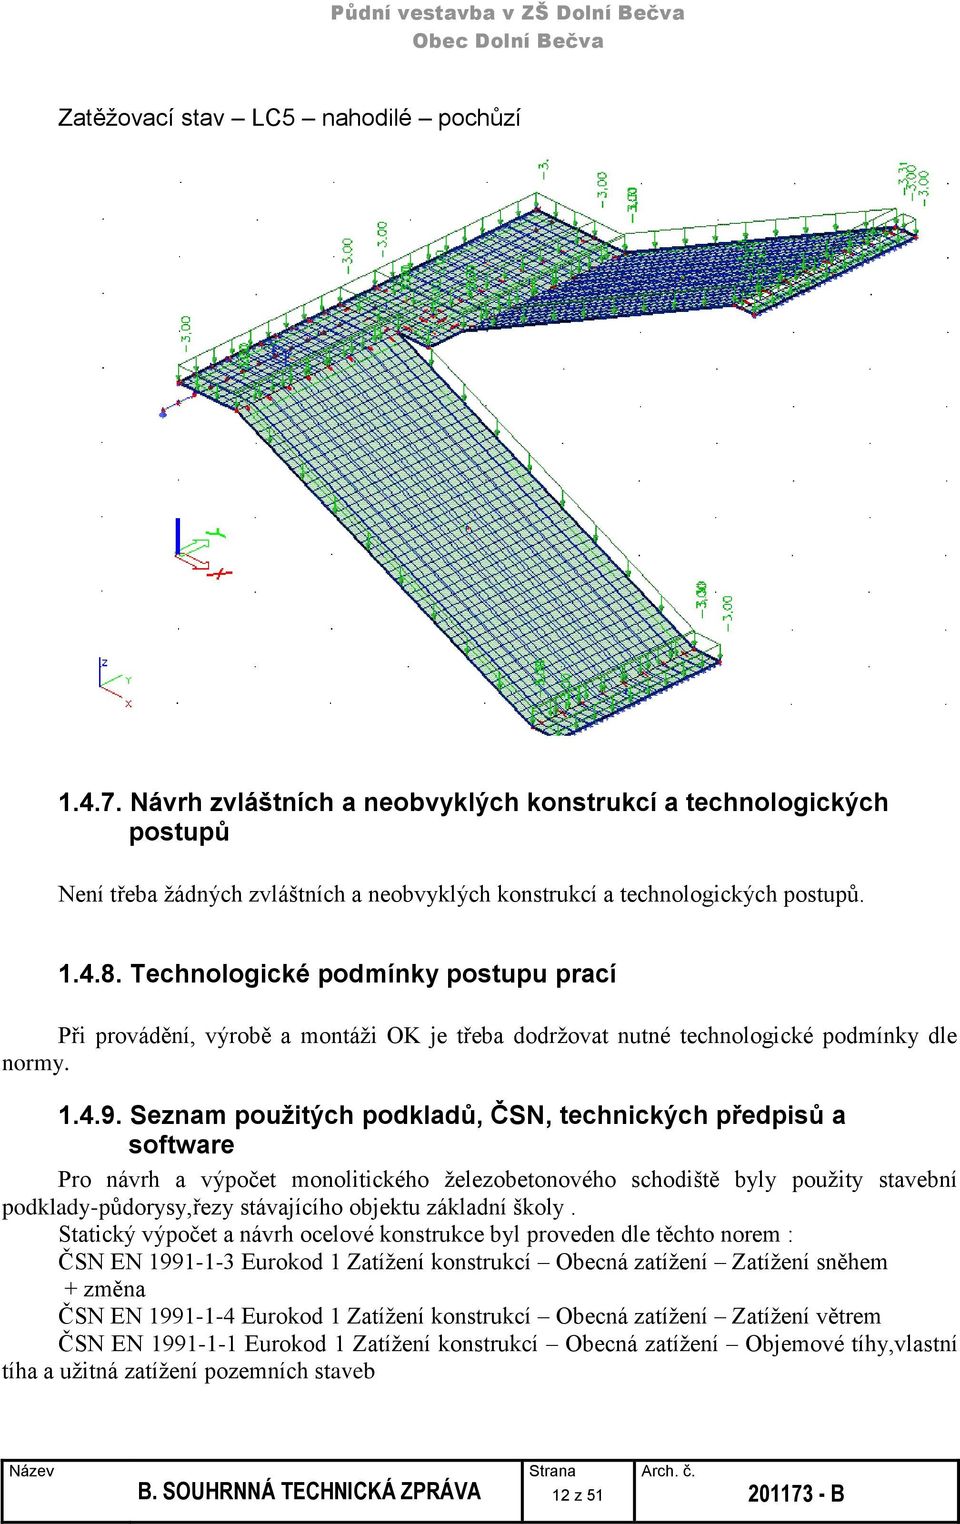 Seznam použitých podkladů, ČSN, technických předpisů a software Pro návrh a výpočet monolitického železobetonového schodiště byly použity stavební podklady-půdorysy,řezy stávajícího objektu základní